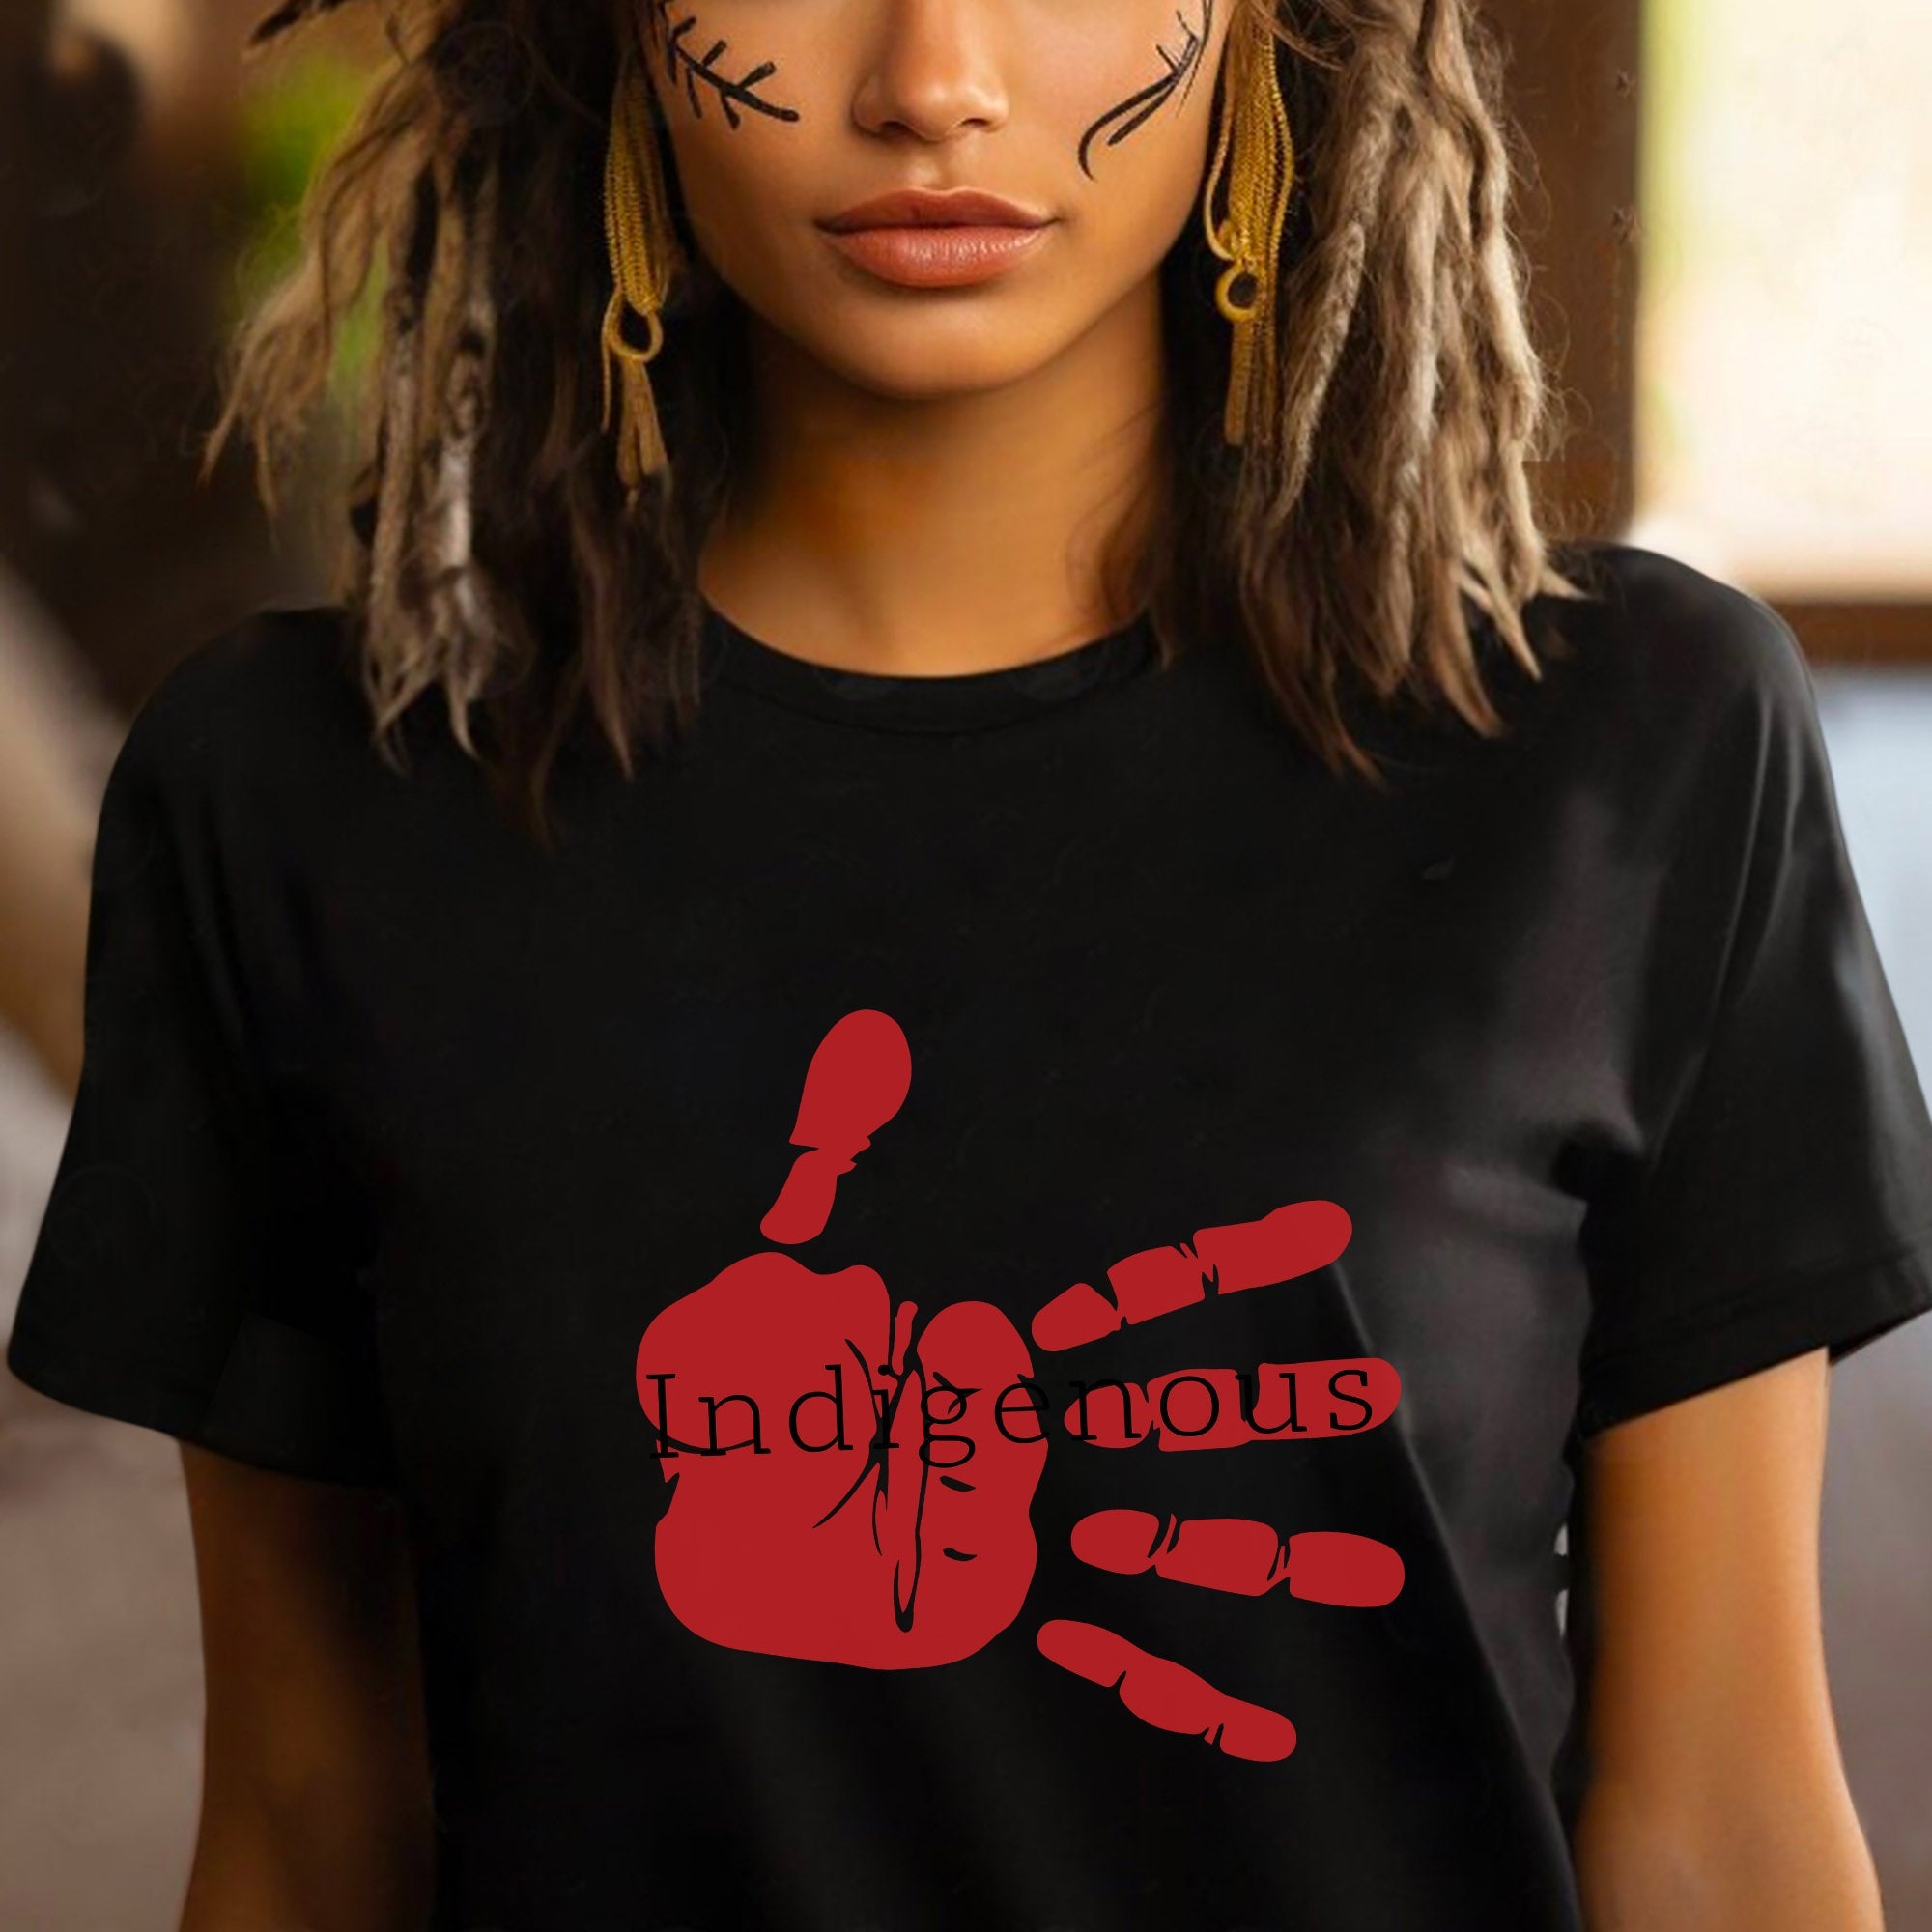 MMIW Indigenous Woman Red Hand Unisex T-Shirt/Hoodie/Sweatshirt